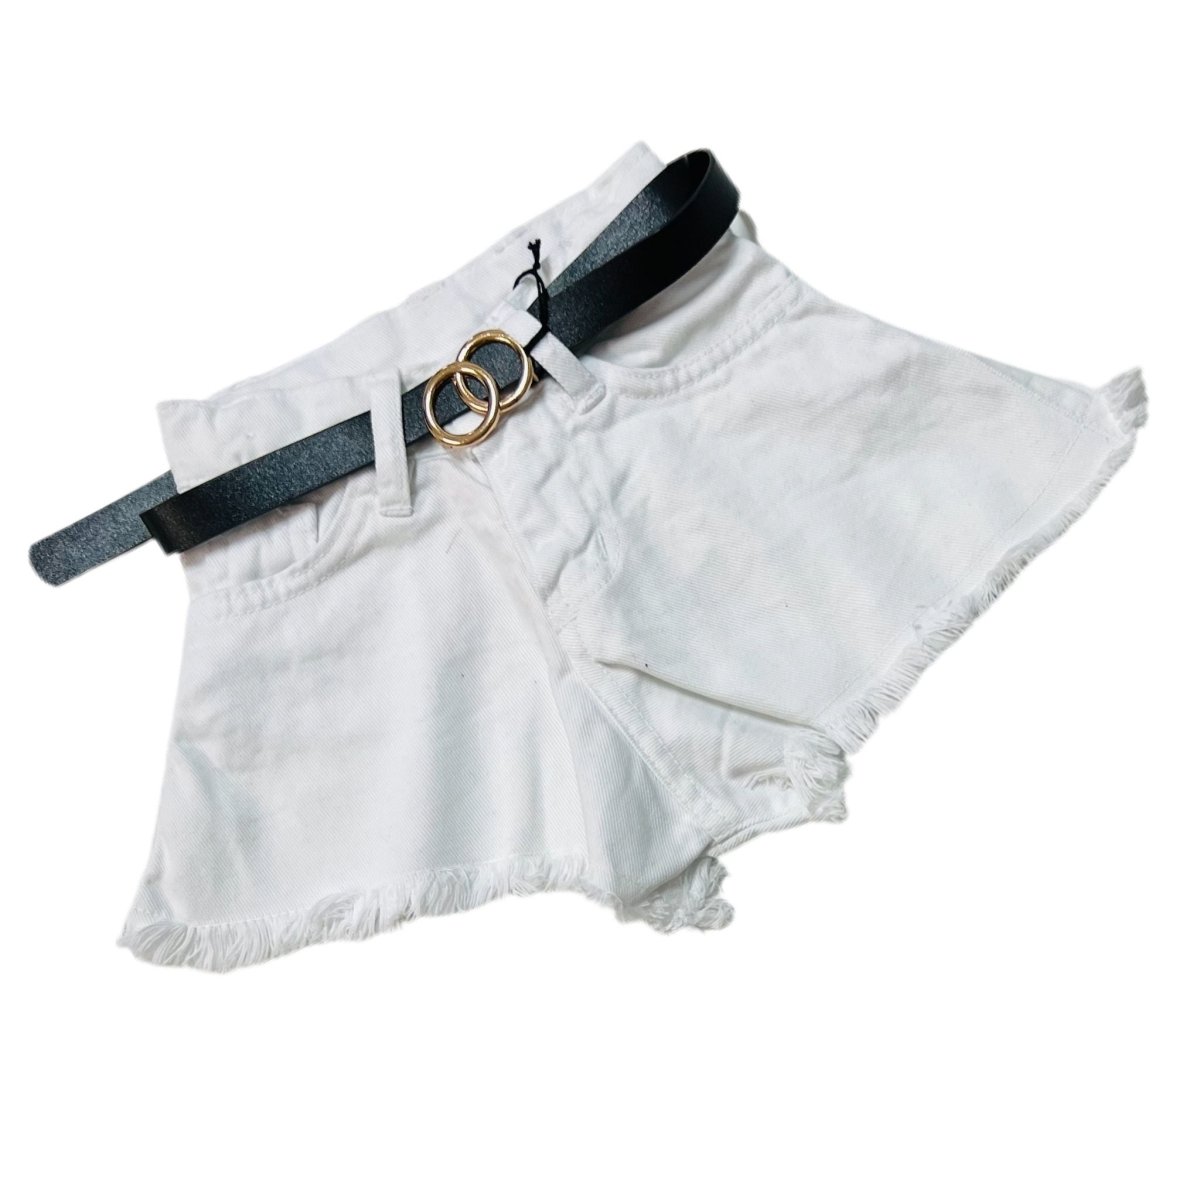 Shorts di Jeans Neonata - Mstore016 - Shorts Neonata - Emilu